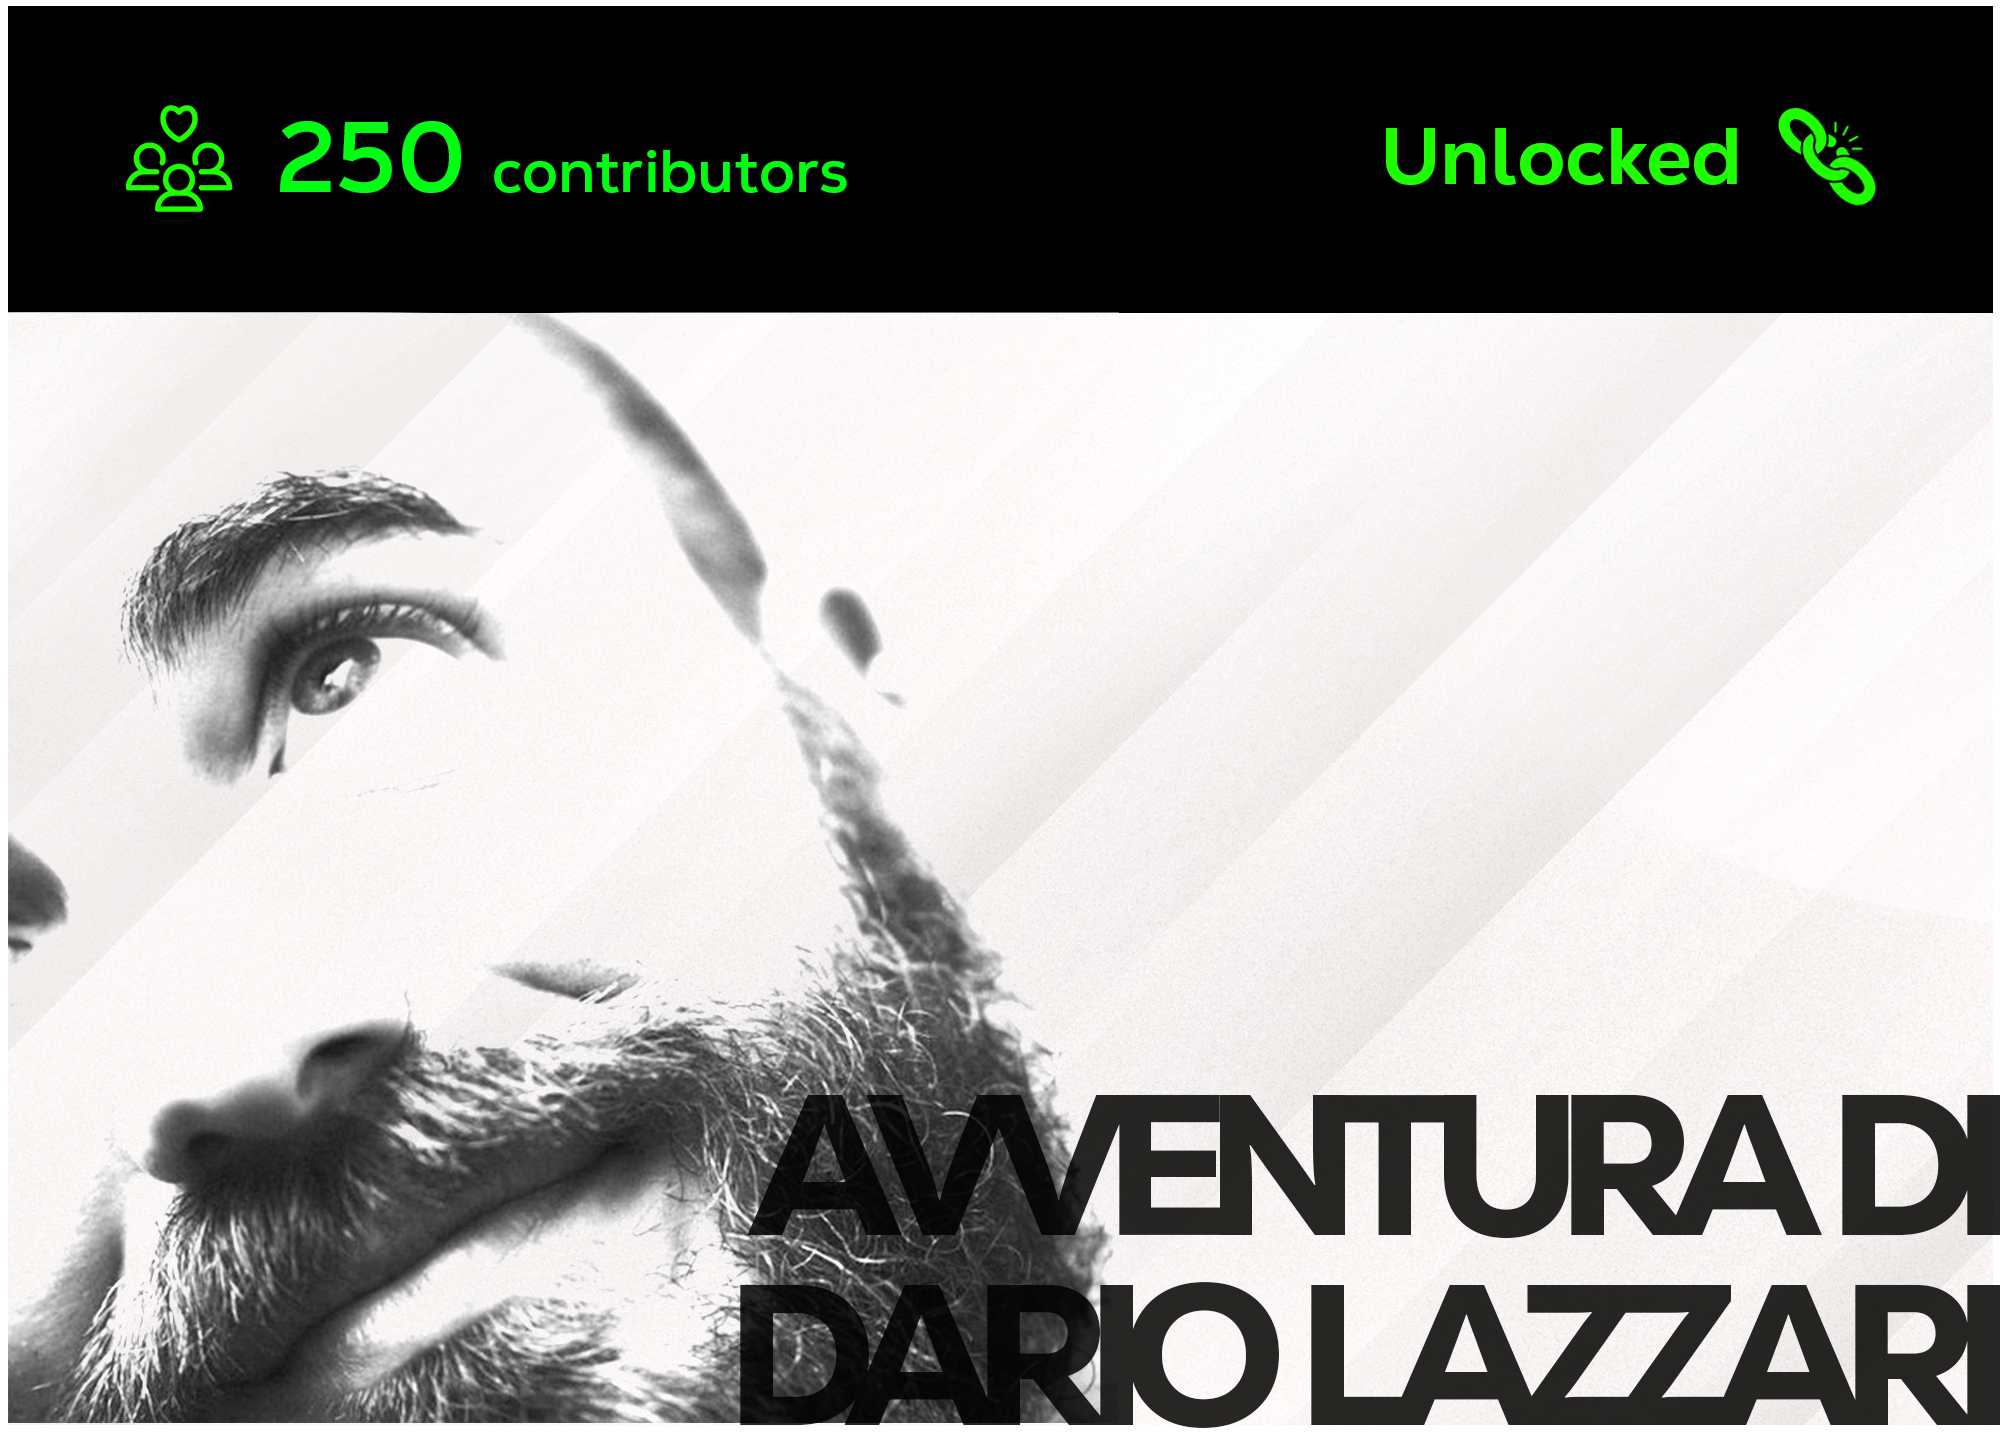 Avventura by Dario Lazzari - Unlocked